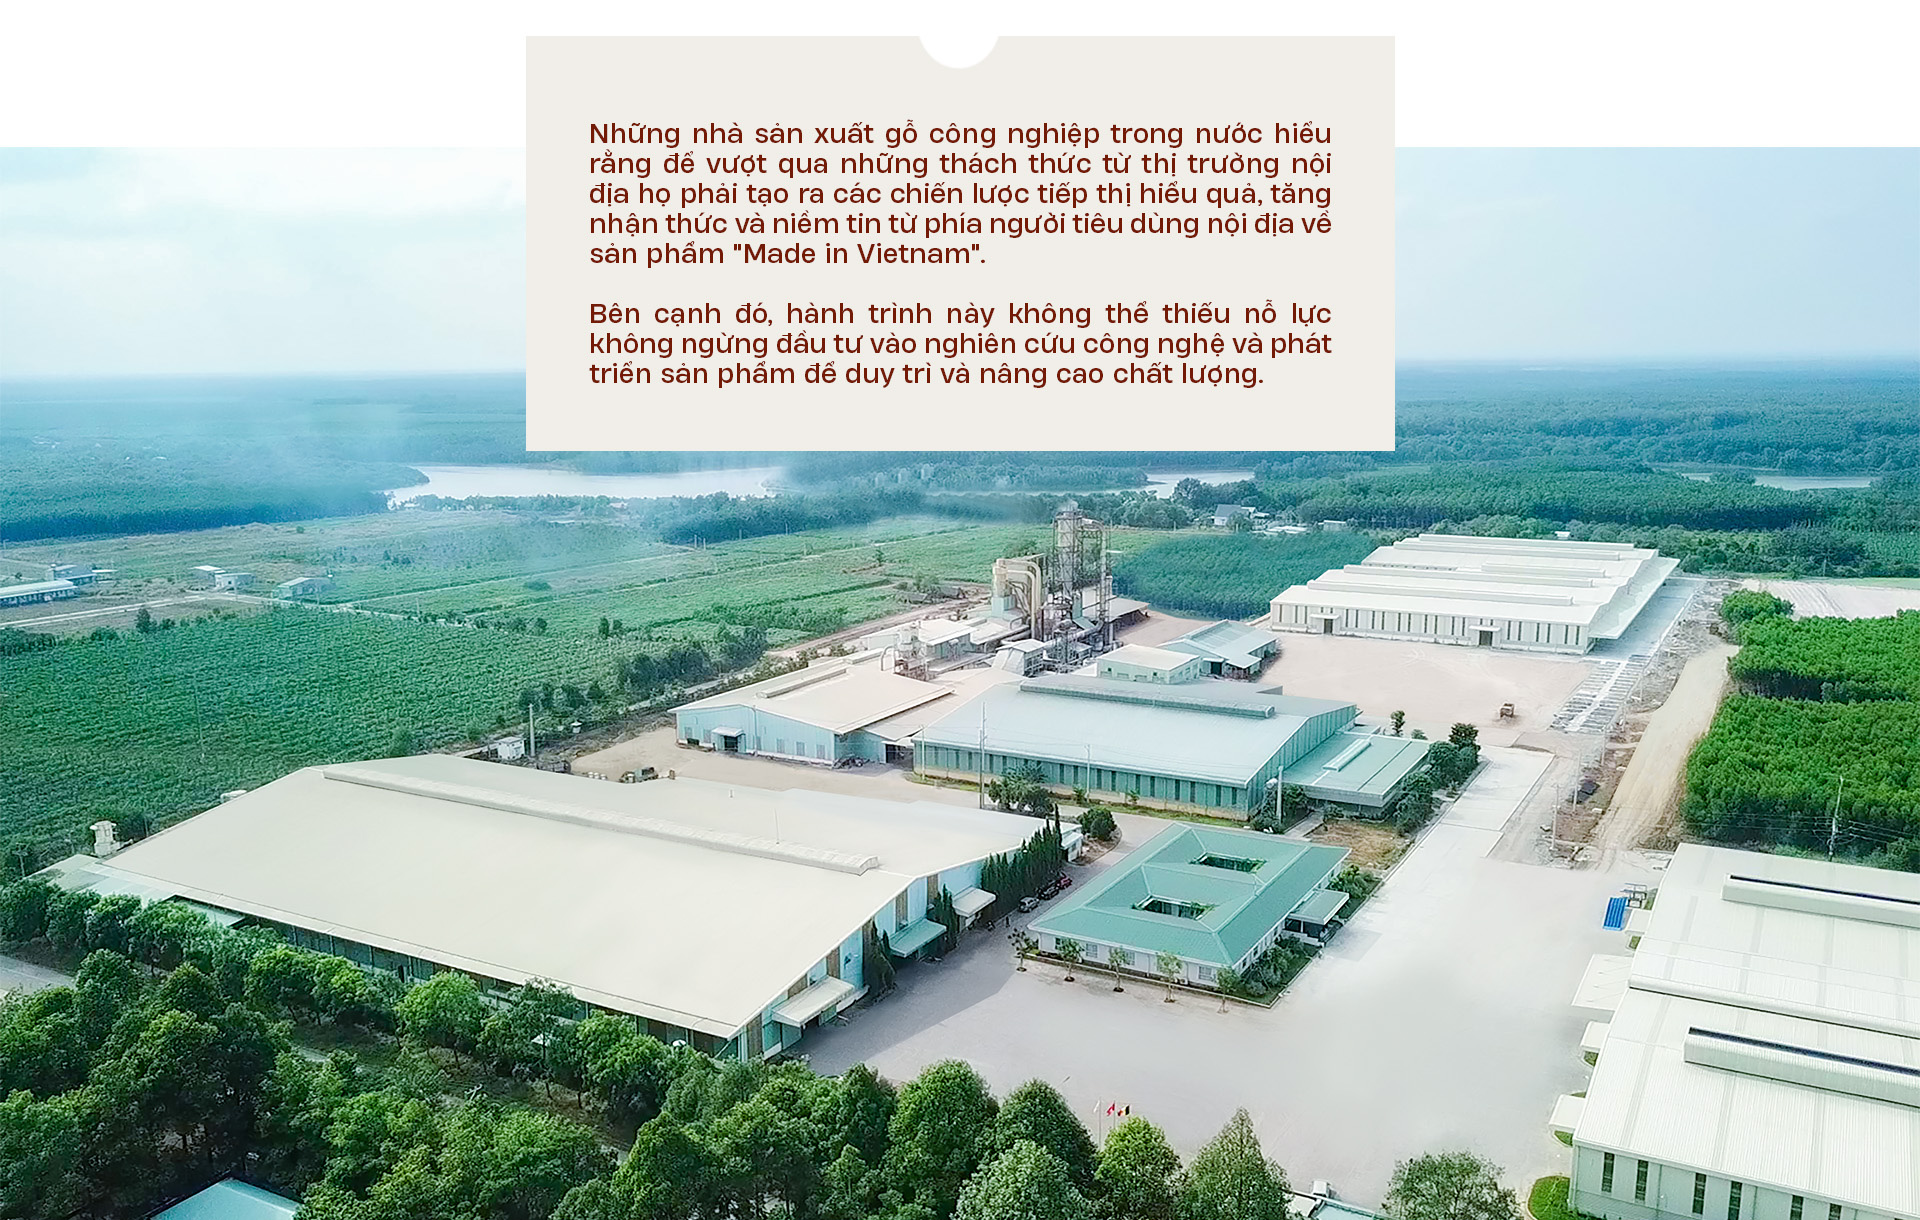 Ván gỗ công nghiệp Việt Nam: Quốc tế đón nhận, làm chủ sân nhà - Ảnh 17.